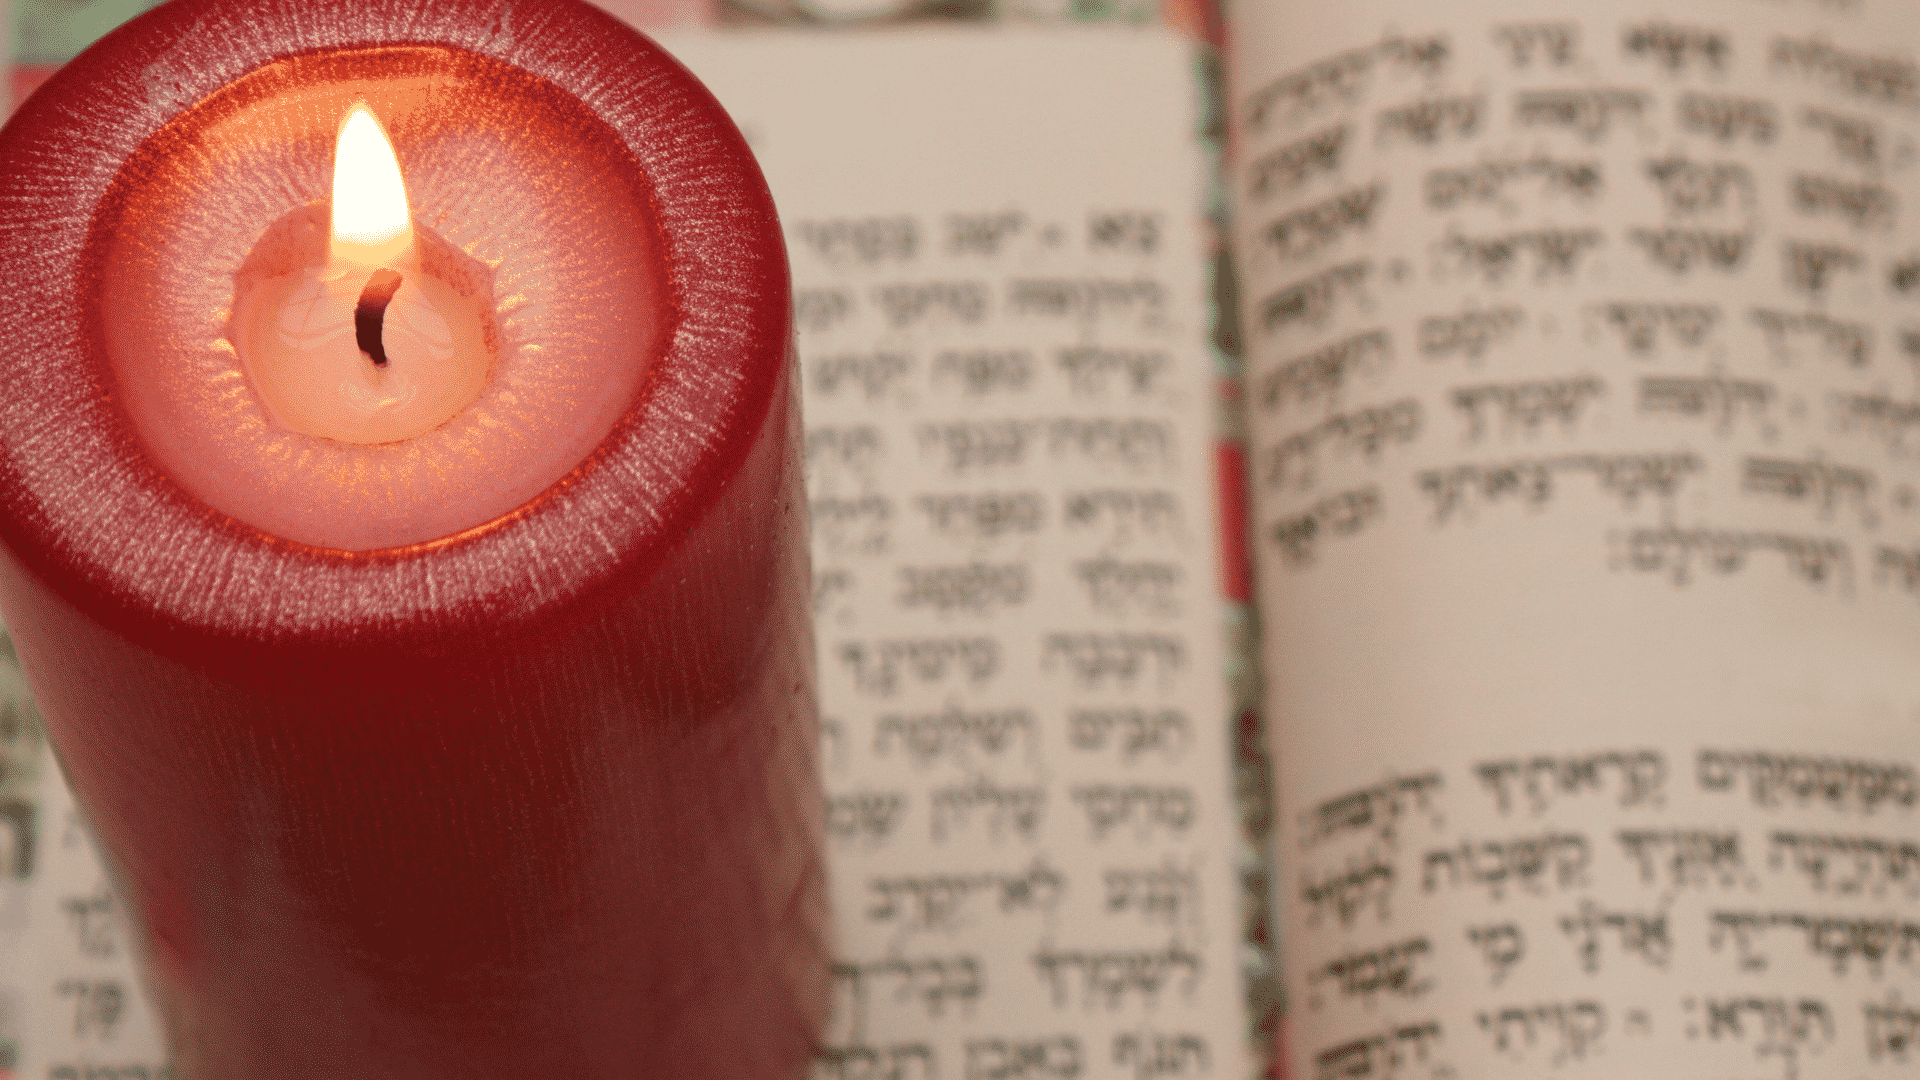 Livro sagrado judaico aberto para estudo da cabala com vela vermelha acesa ao lado